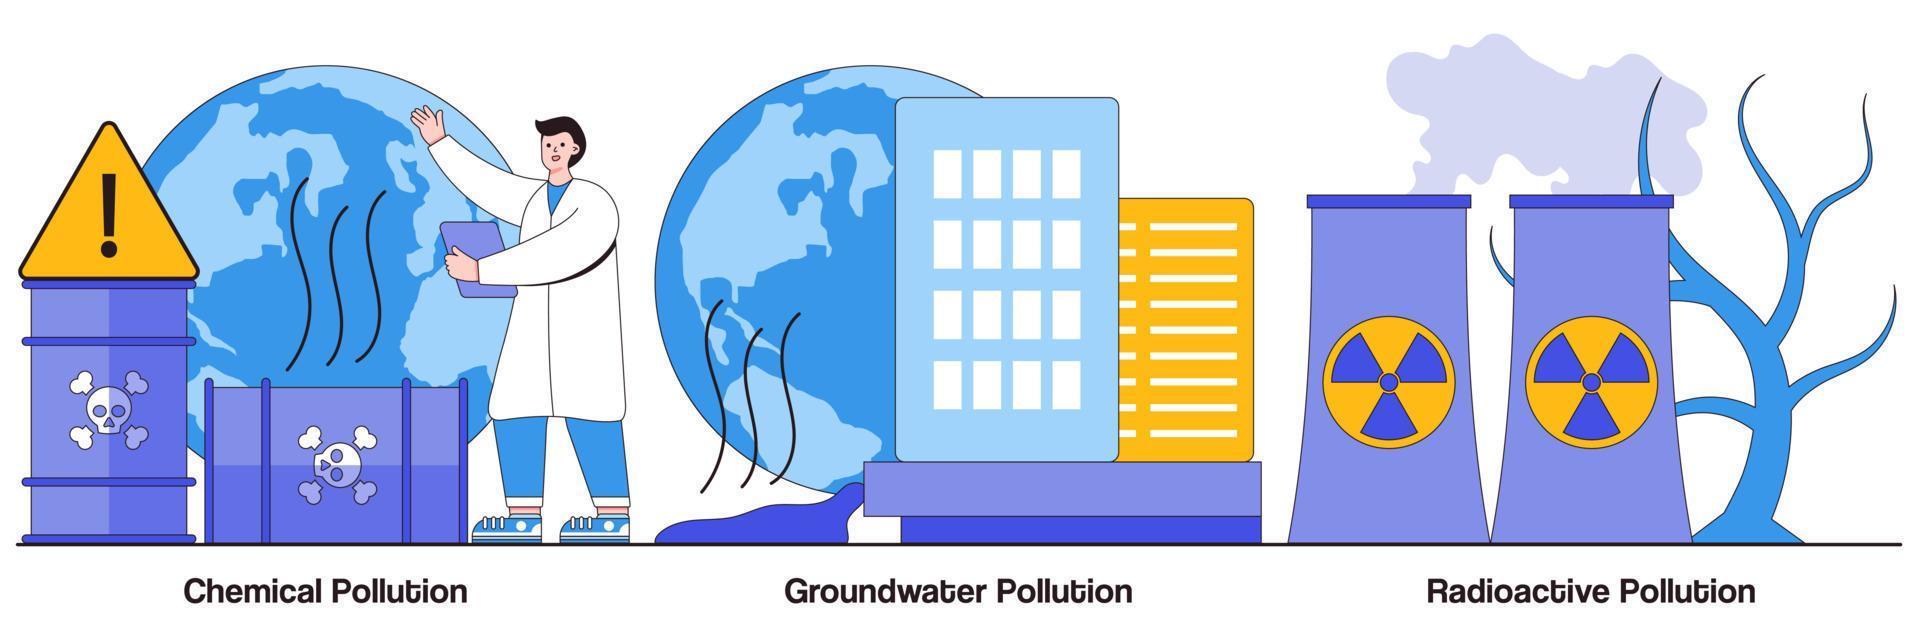 paquete ilustrado de contaminación química, de aguas subterráneas y radiactiva vector